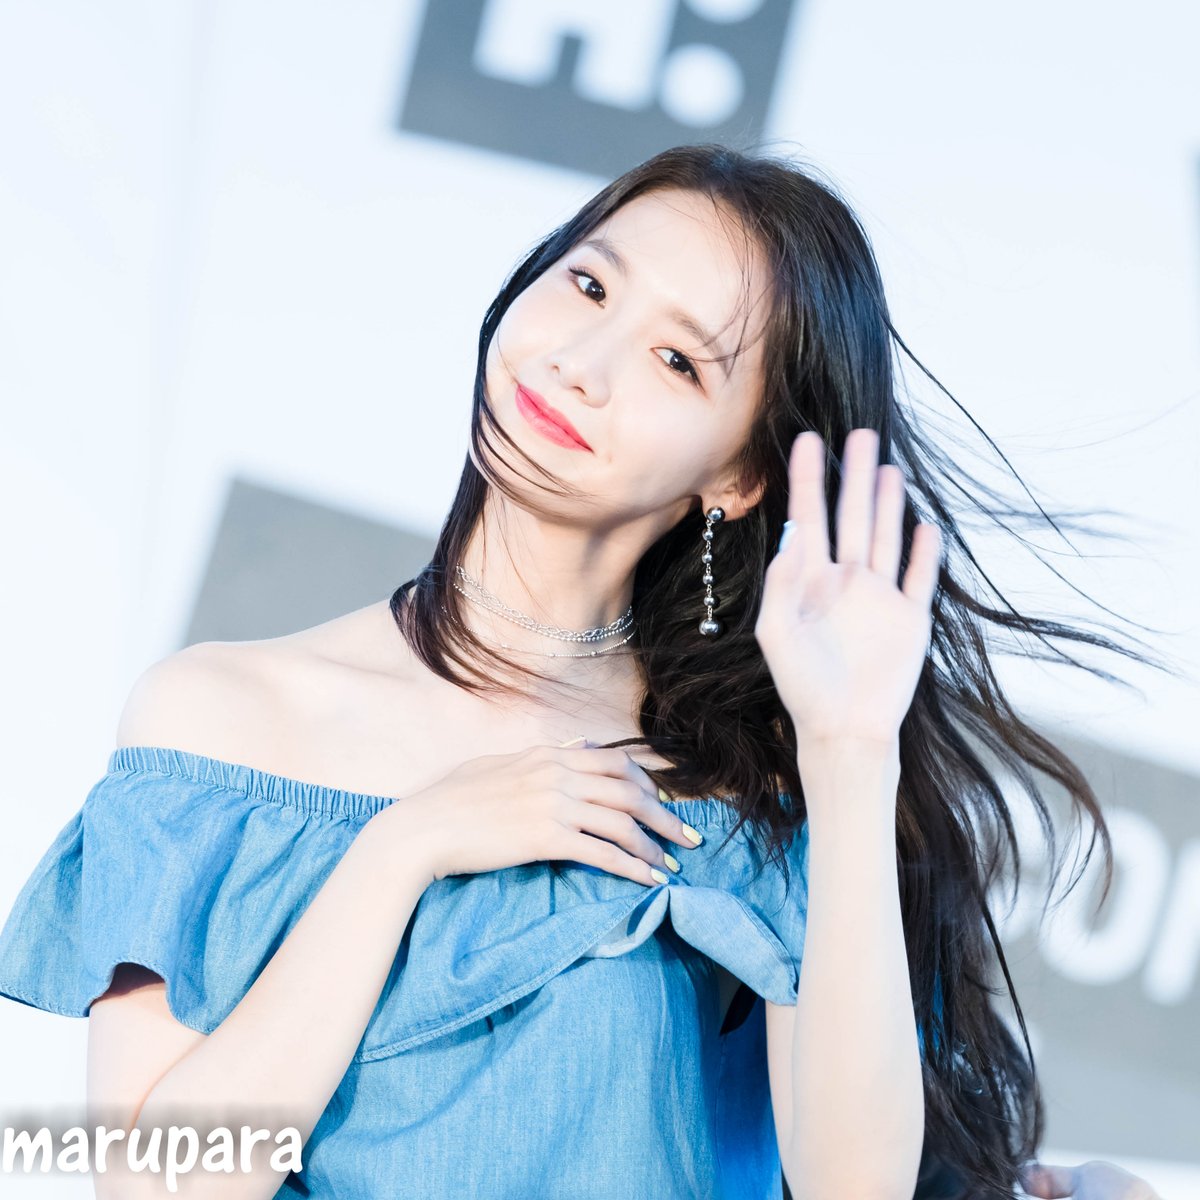 [PIC][22-07-2017]YoonA khởi hành đi Đài Loan để tham dự buổi Fanmeeting cho thương hiệu "H:CONNECT" vào hôm nay - Page 4 DFepV_lUAAAYgqP